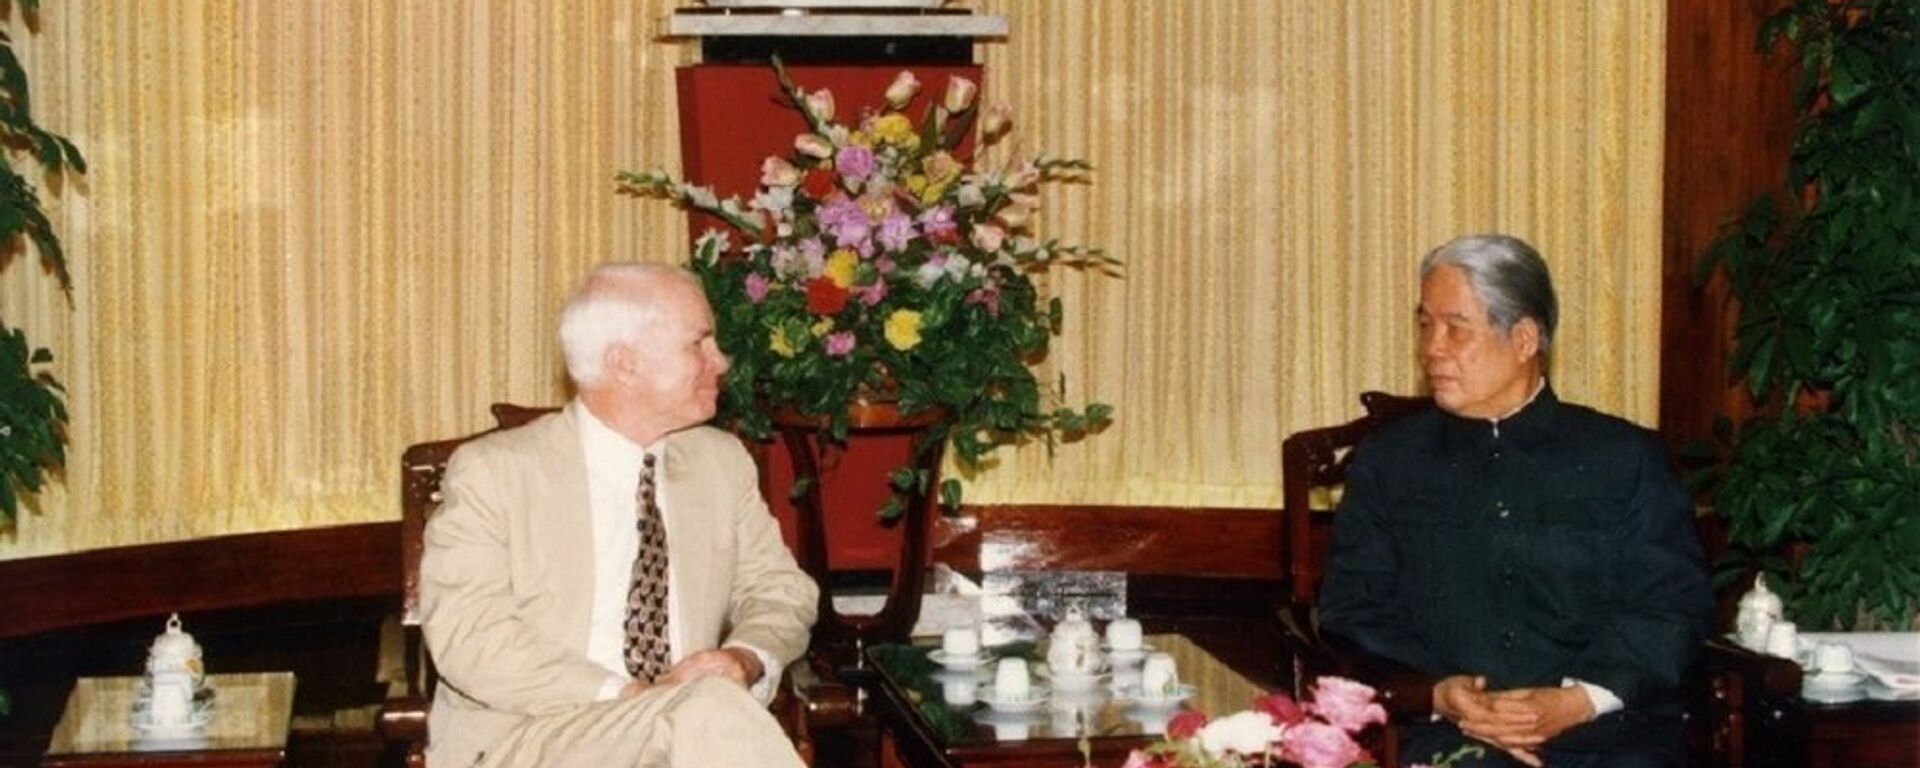 Tổng Bí thư Đỗ Mười tiếp Thượng nghị sĩ John McCain ngày 13/11/1996, tại Hà Nội. - Sputnik Việt Nam, 1920, 08.10.2018